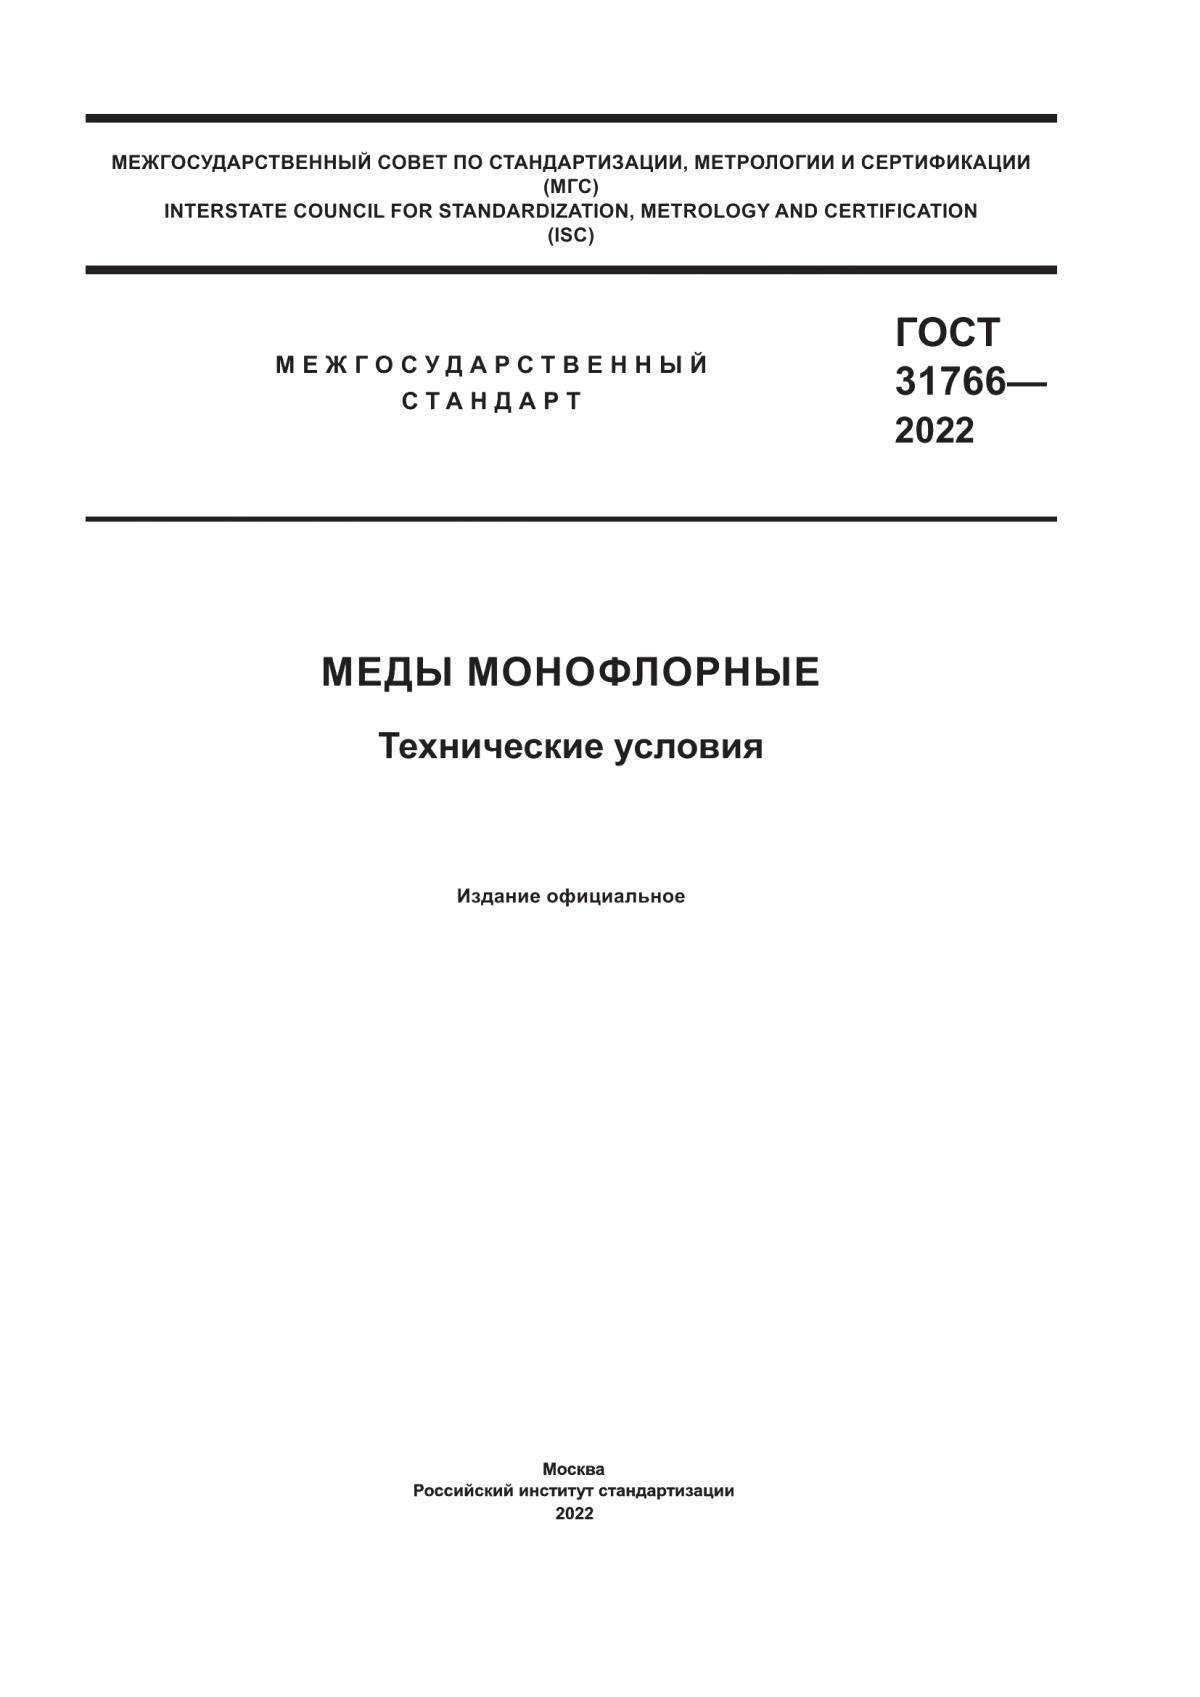 ГОСТ 31766-2022 Меды монофлорные. Технические условия